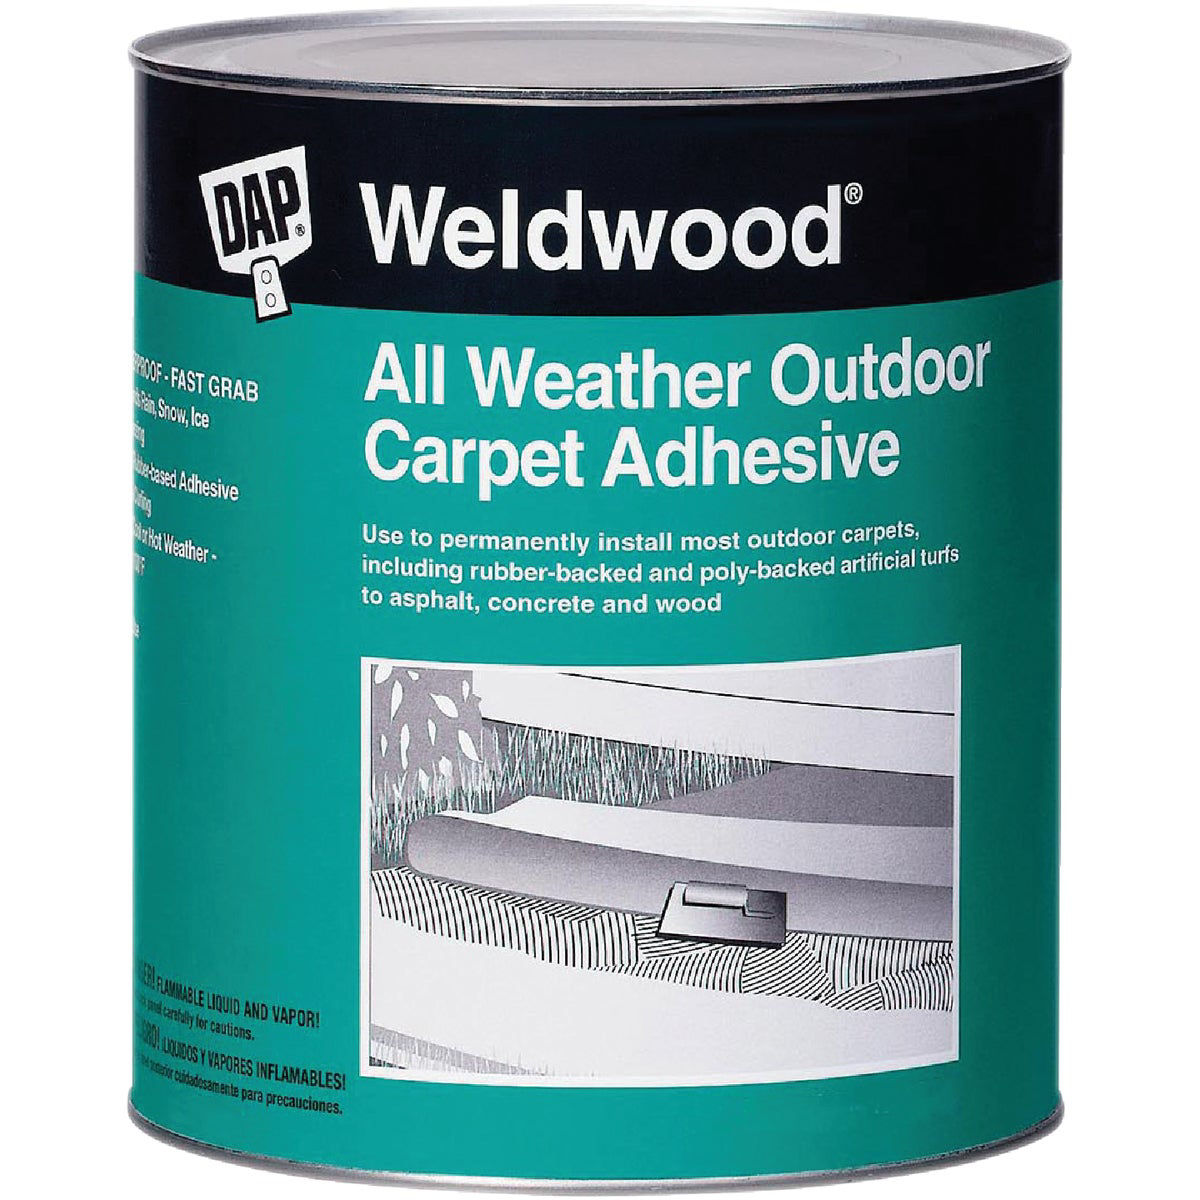 Dap Original Weldwood Contact Cement - 1 pt can